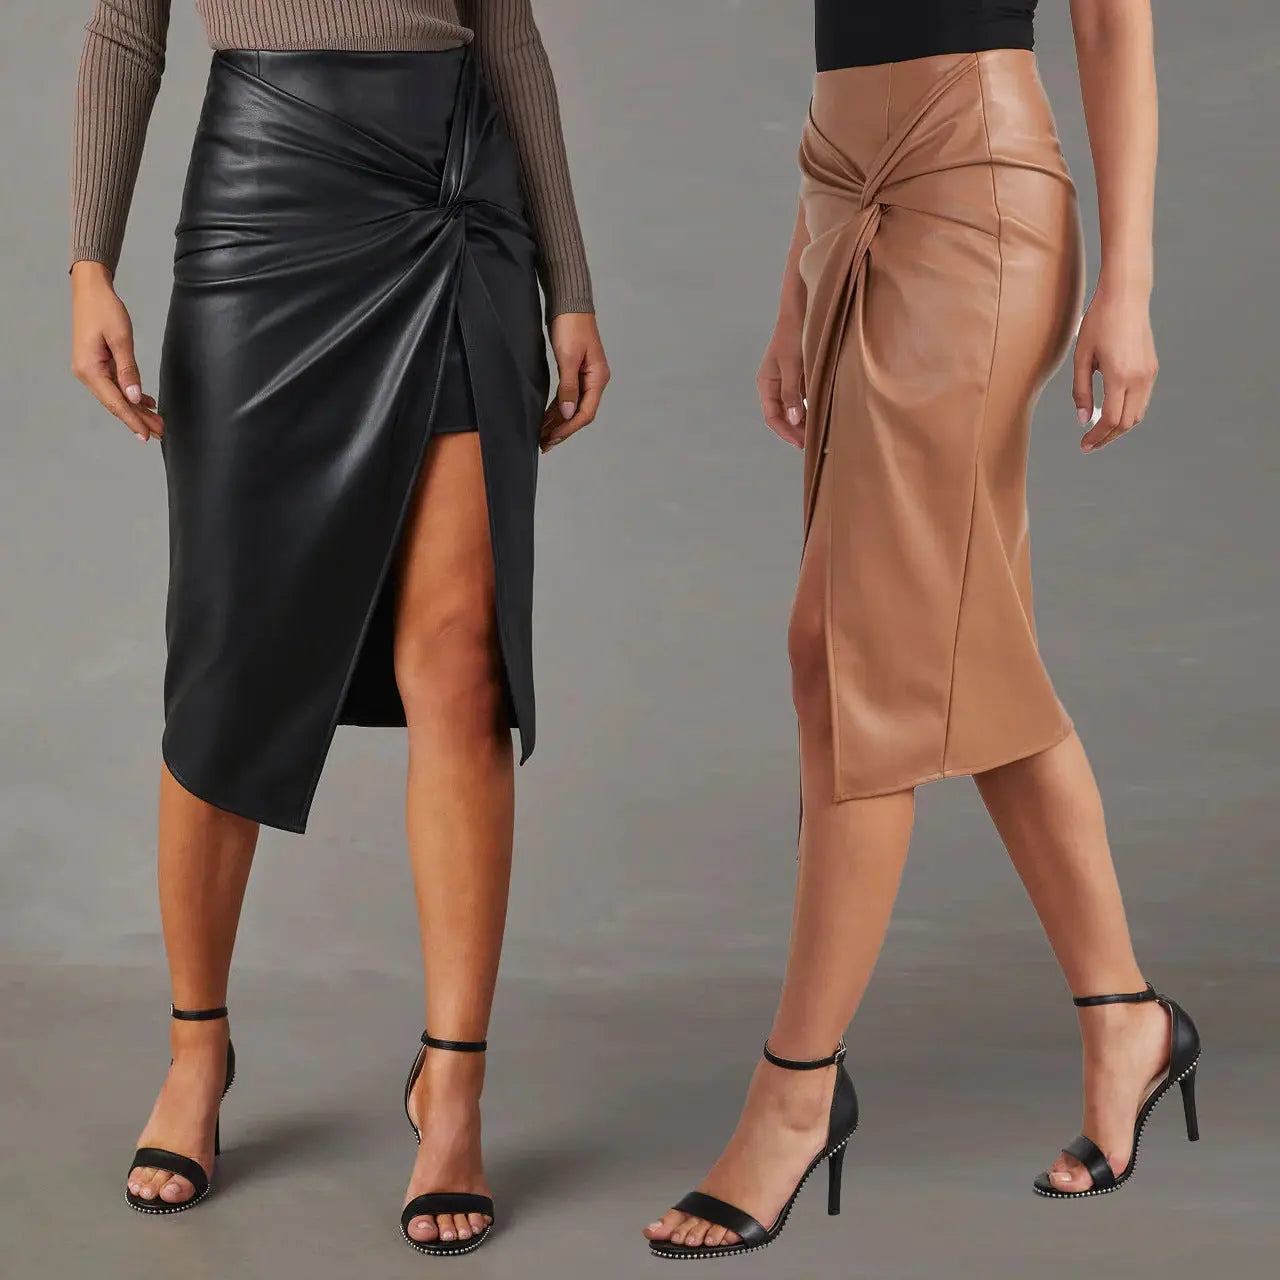 Chic Mid-Length Split Leather Skirt for Women - Trendy Street Style - Image #1